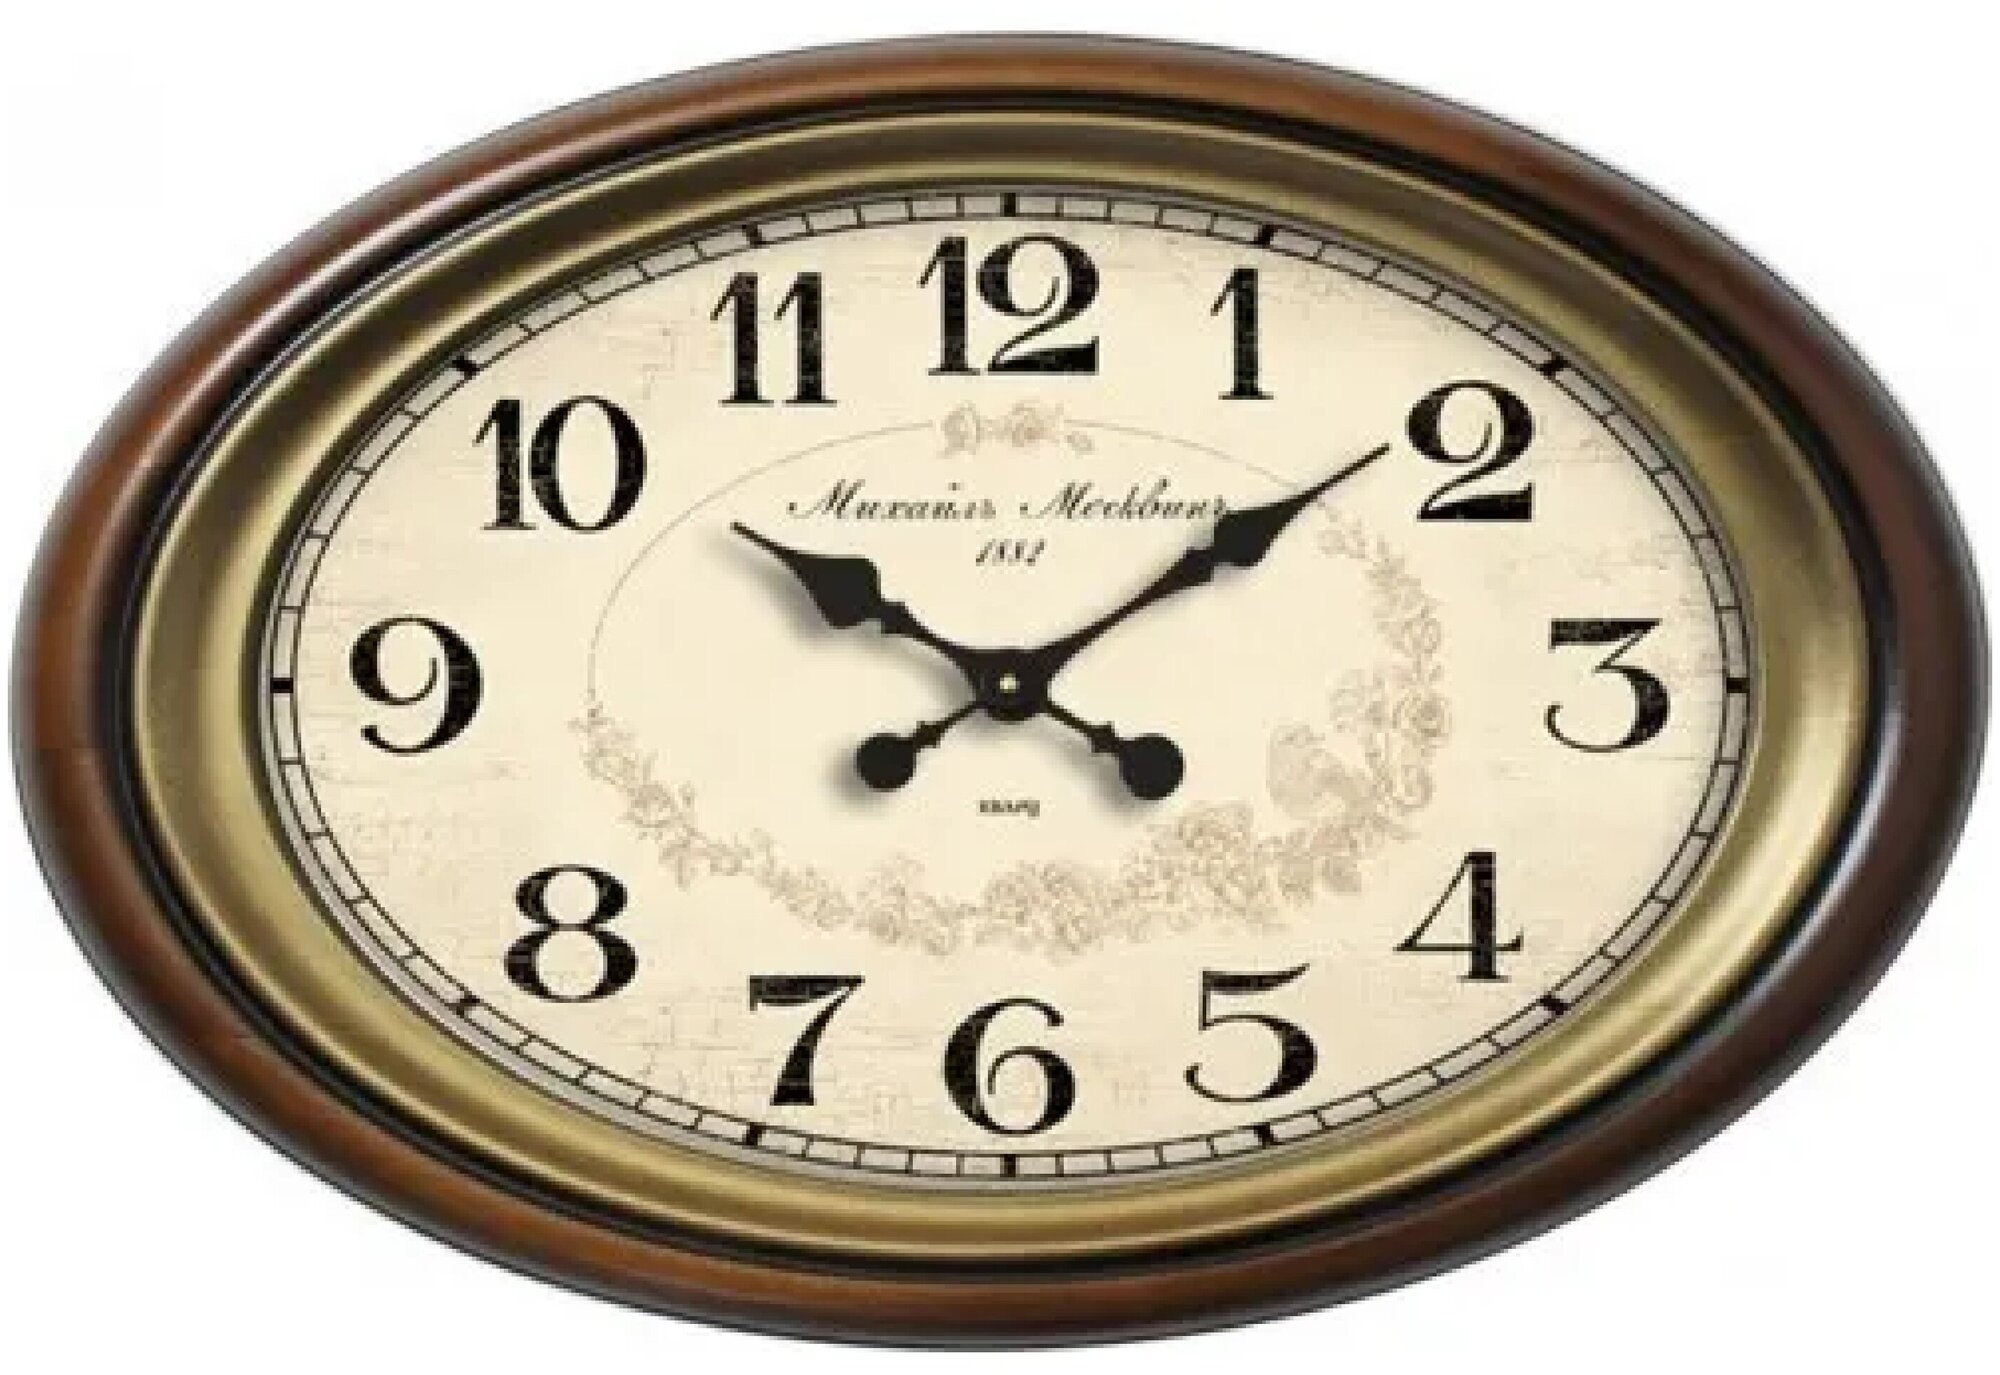 Михаил москвин Соренто 6П-1 классические настенные часы с арабскими индексами